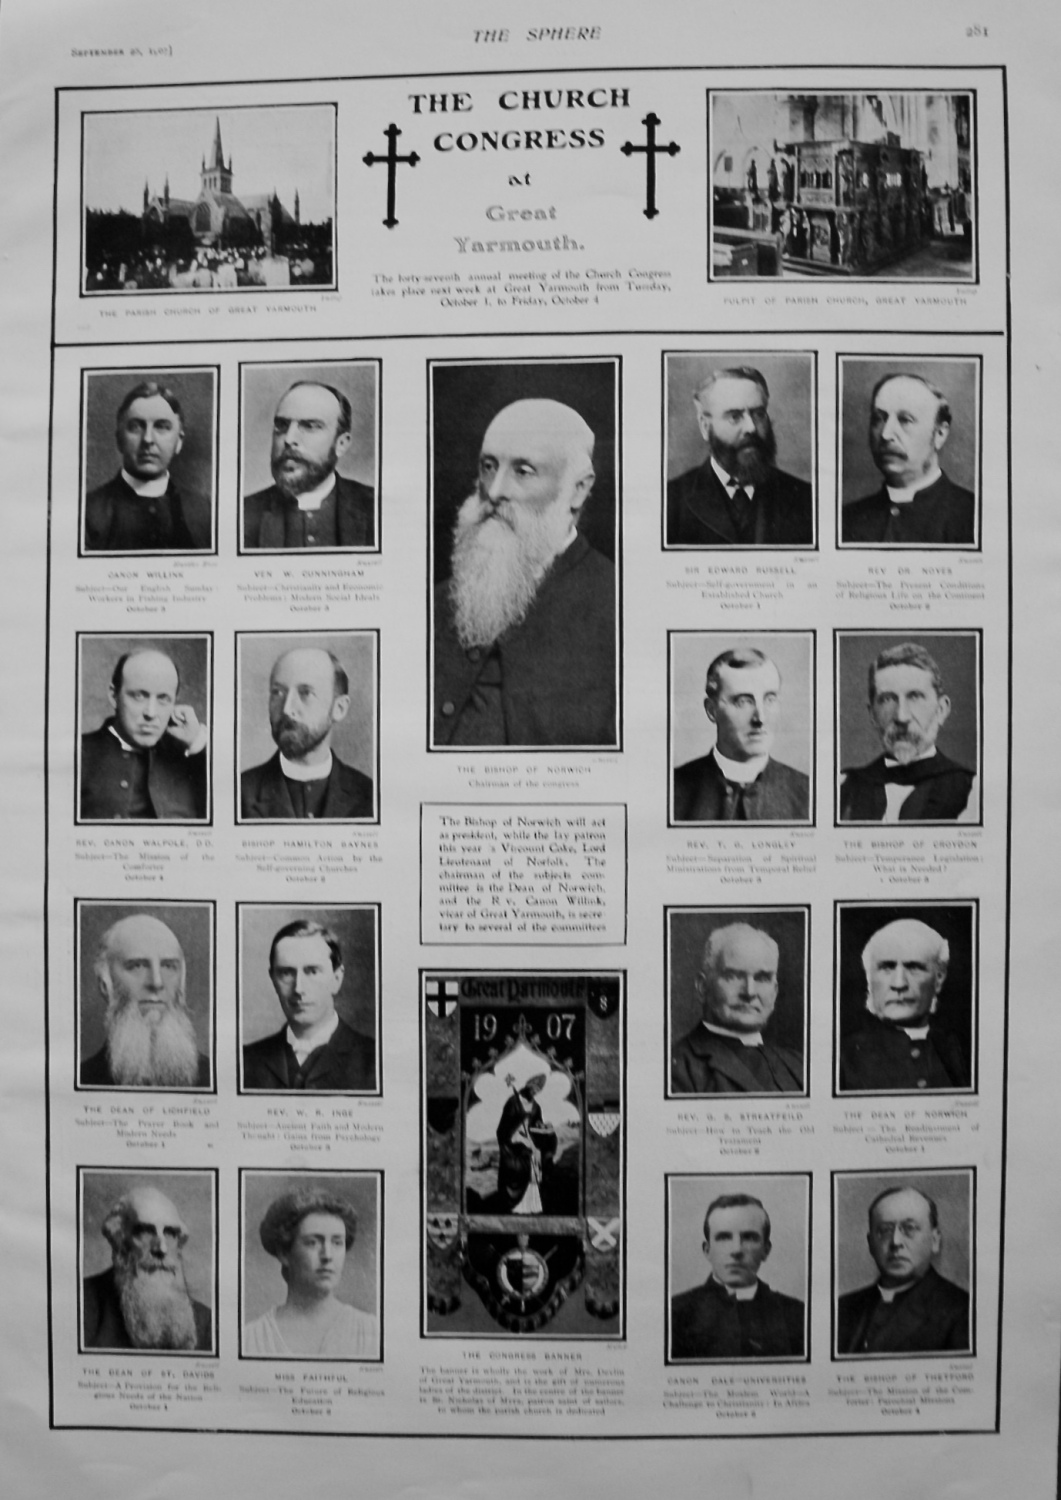 Church Congress at Great Yarmouth. 1907